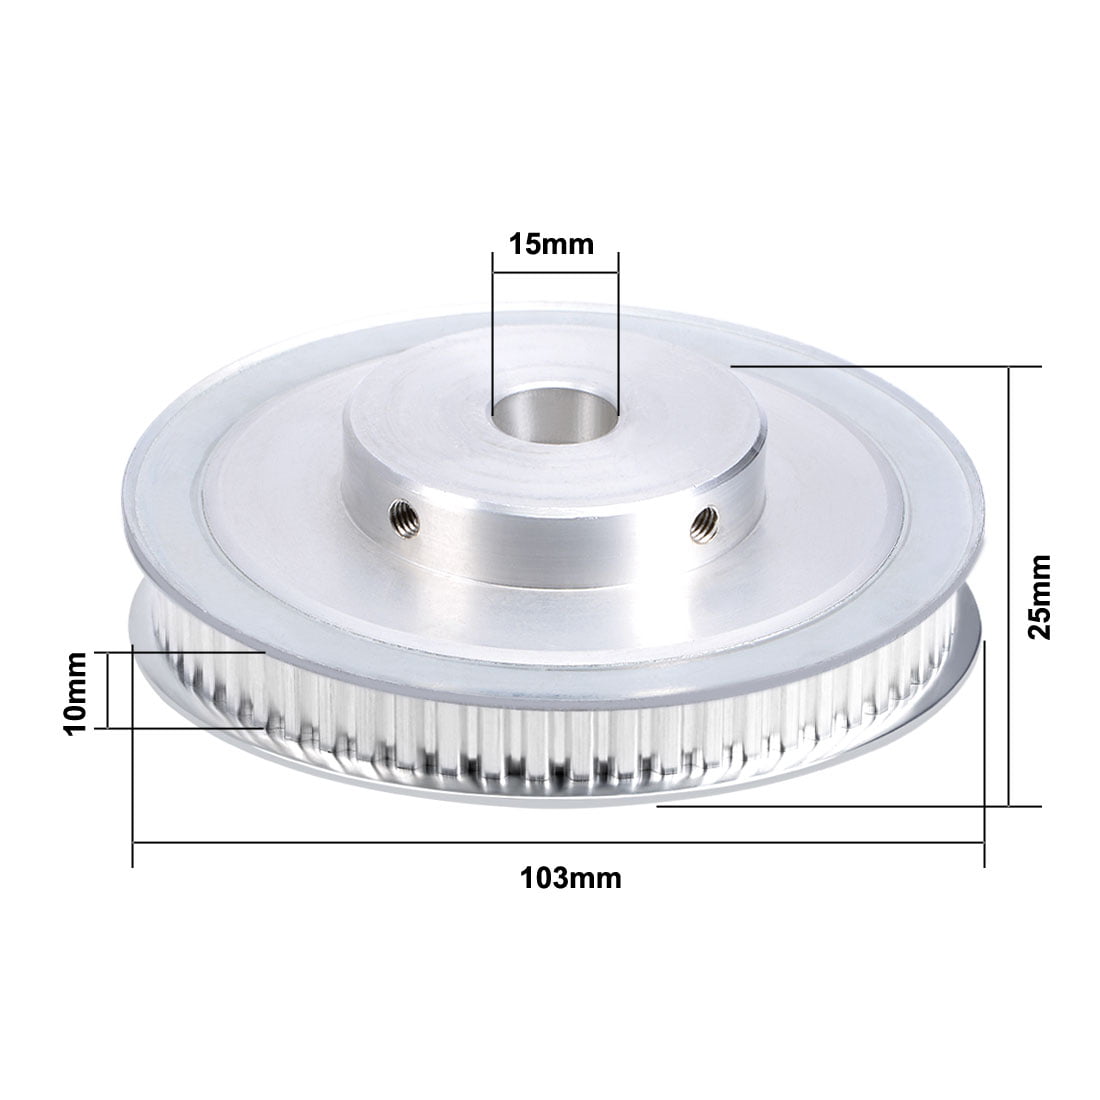 Aluminum XL 60 Teeth 15mm Bore Timing Belt Pulley for 10mm Belt 3D Printer CNC 